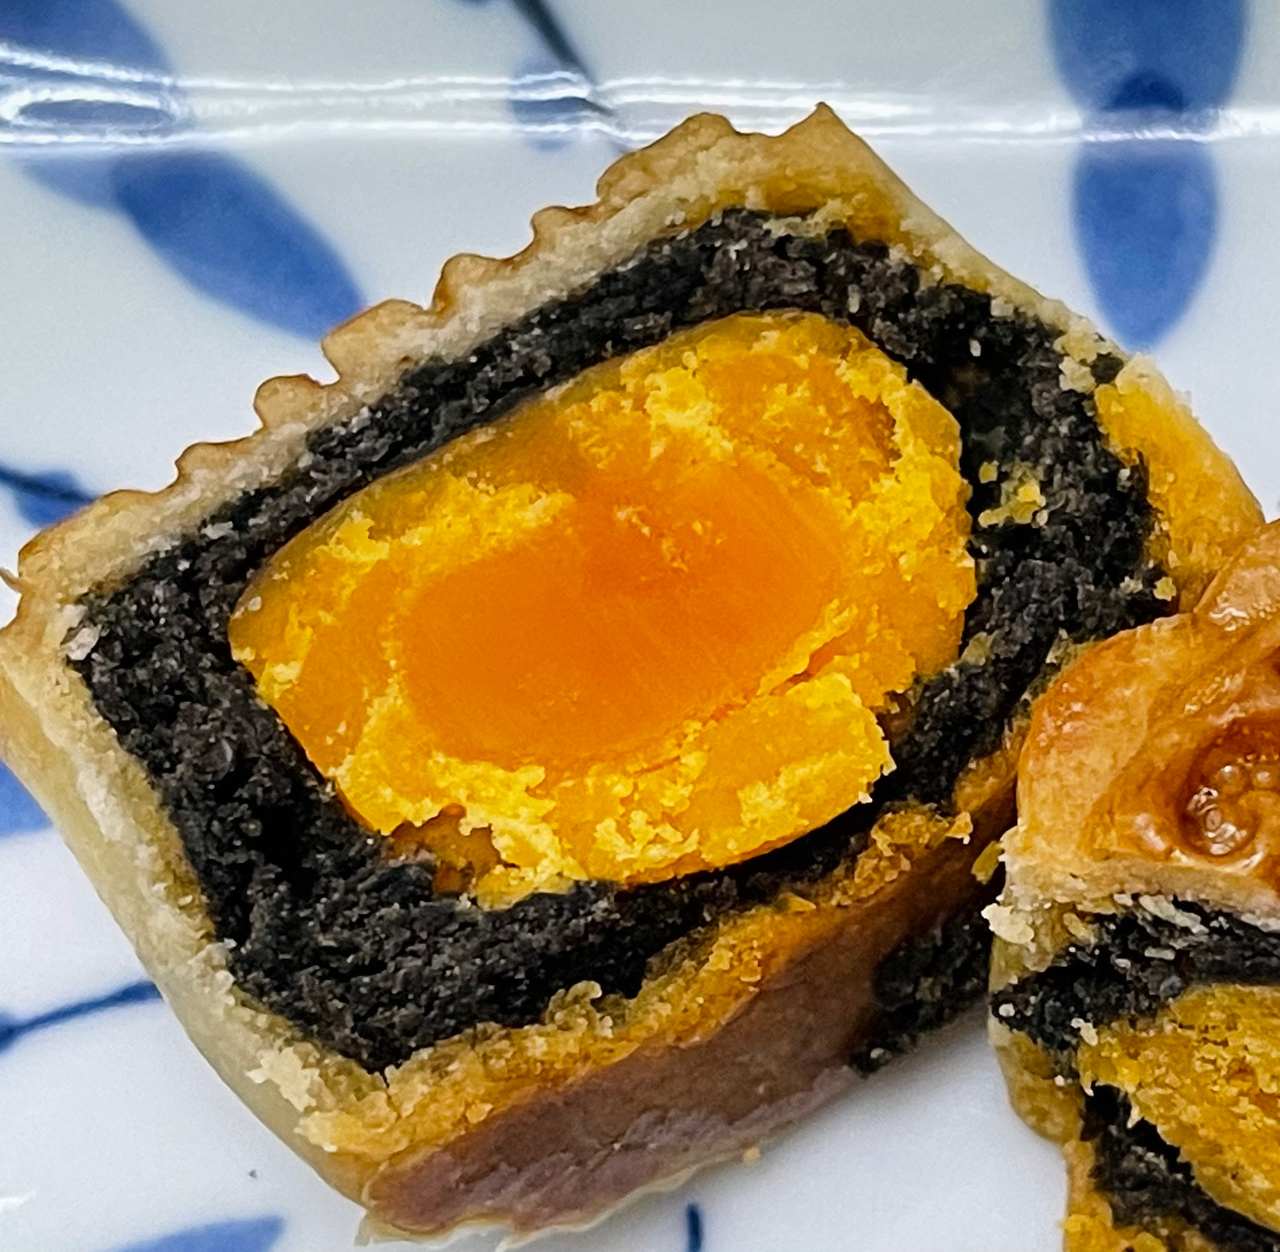 广式月饼—蛋黄芝麻月饼